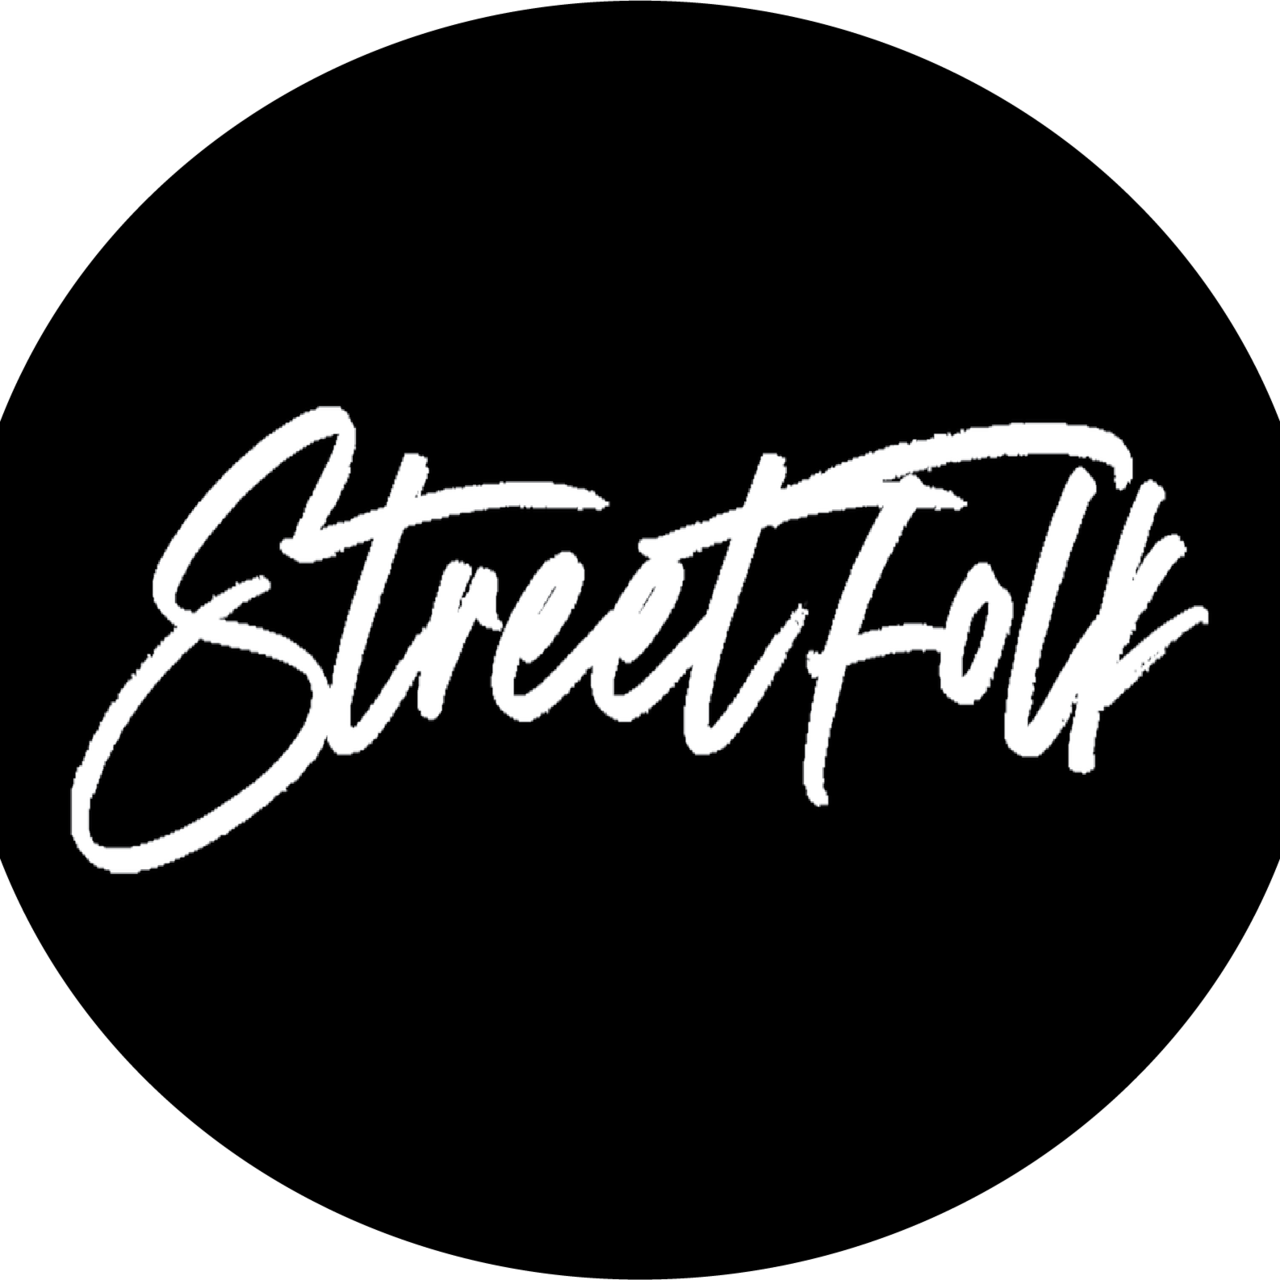 Street Folk